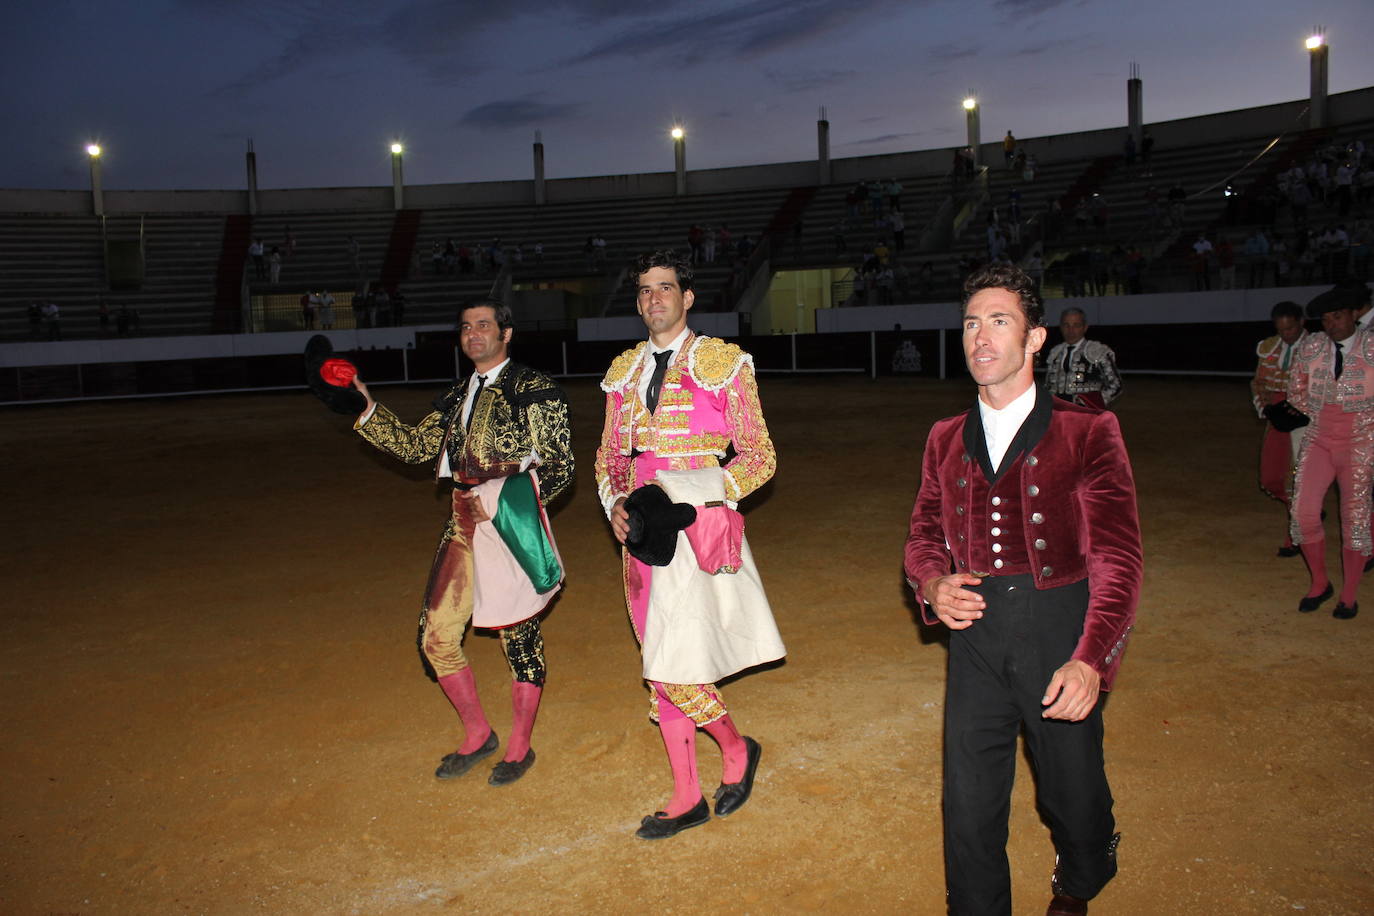 Triunfo para Morante de la Puebla, López Simón y Leonardo en Casar de Cáceres